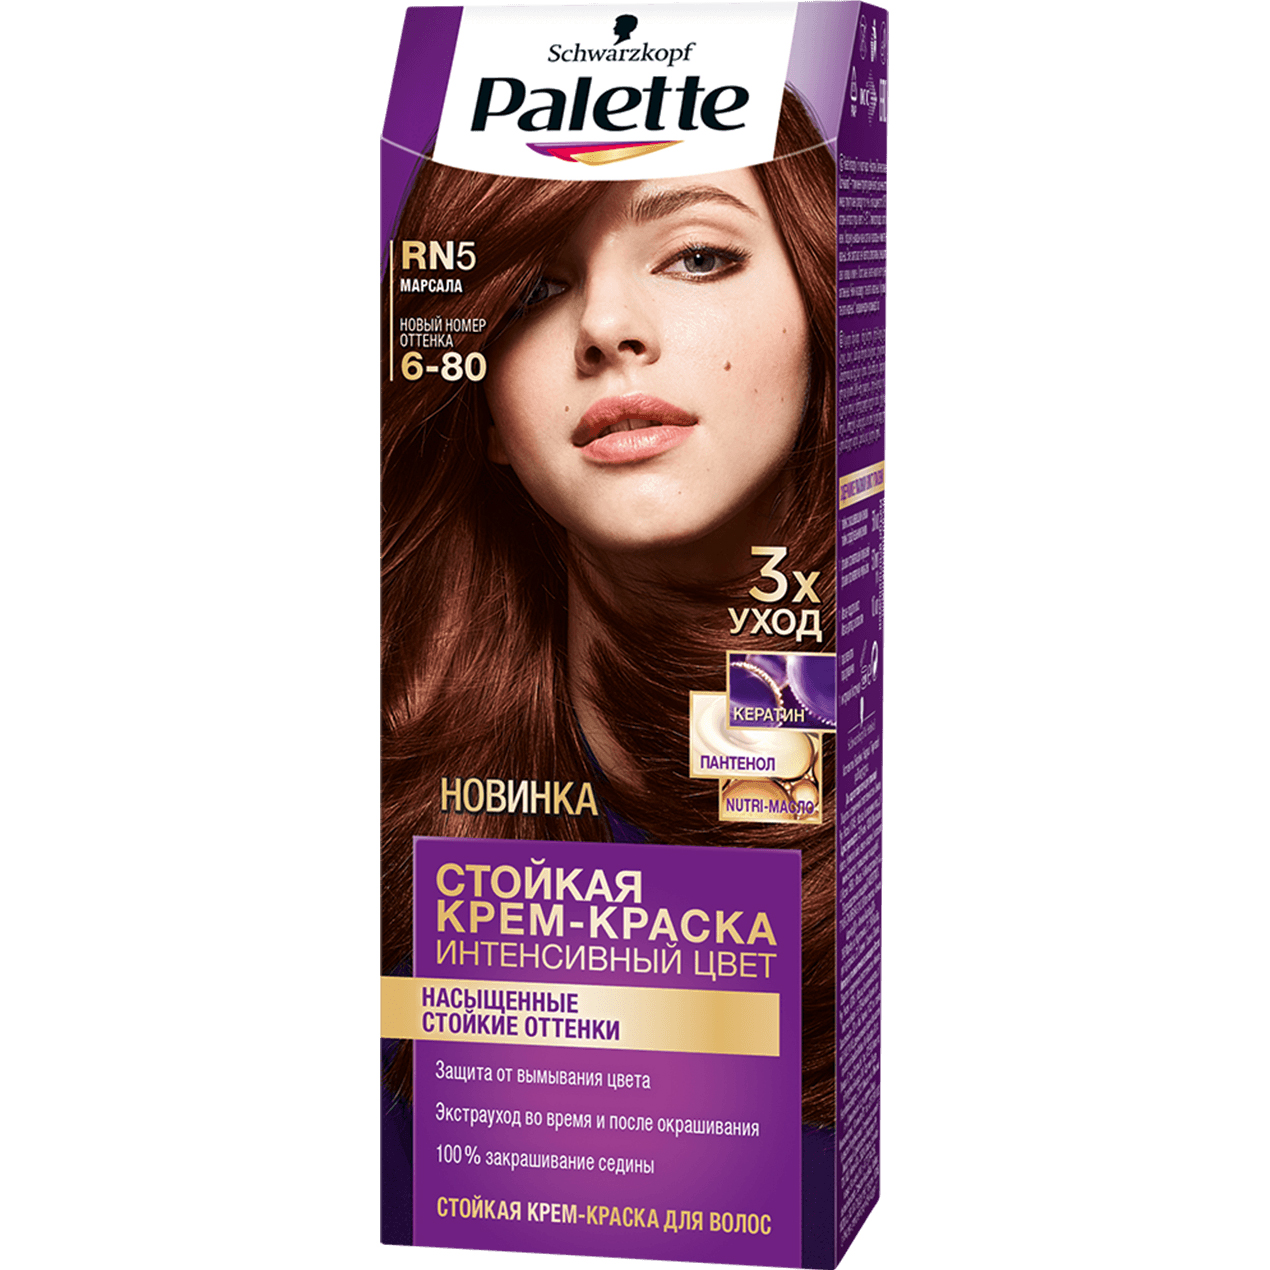 Крем-краска для волос Palette Интенсивный цвет 6-80, RN5 Марсала 110 мл